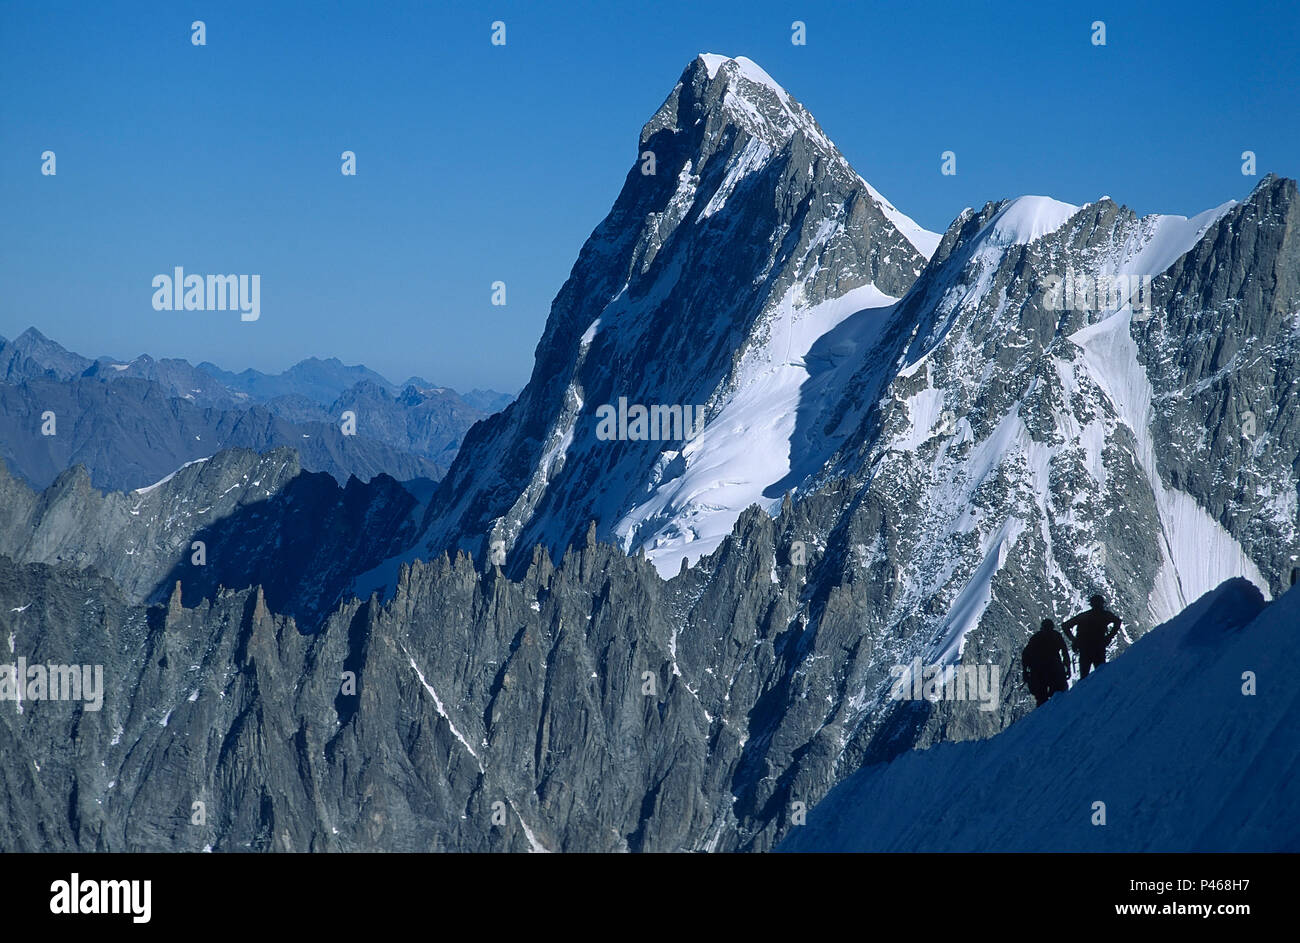 Alpinistes sur l'Aiguille du Midi avec les Grandes Jorasses, au-delà des Alpes, Chamonix, France Banque D'Images